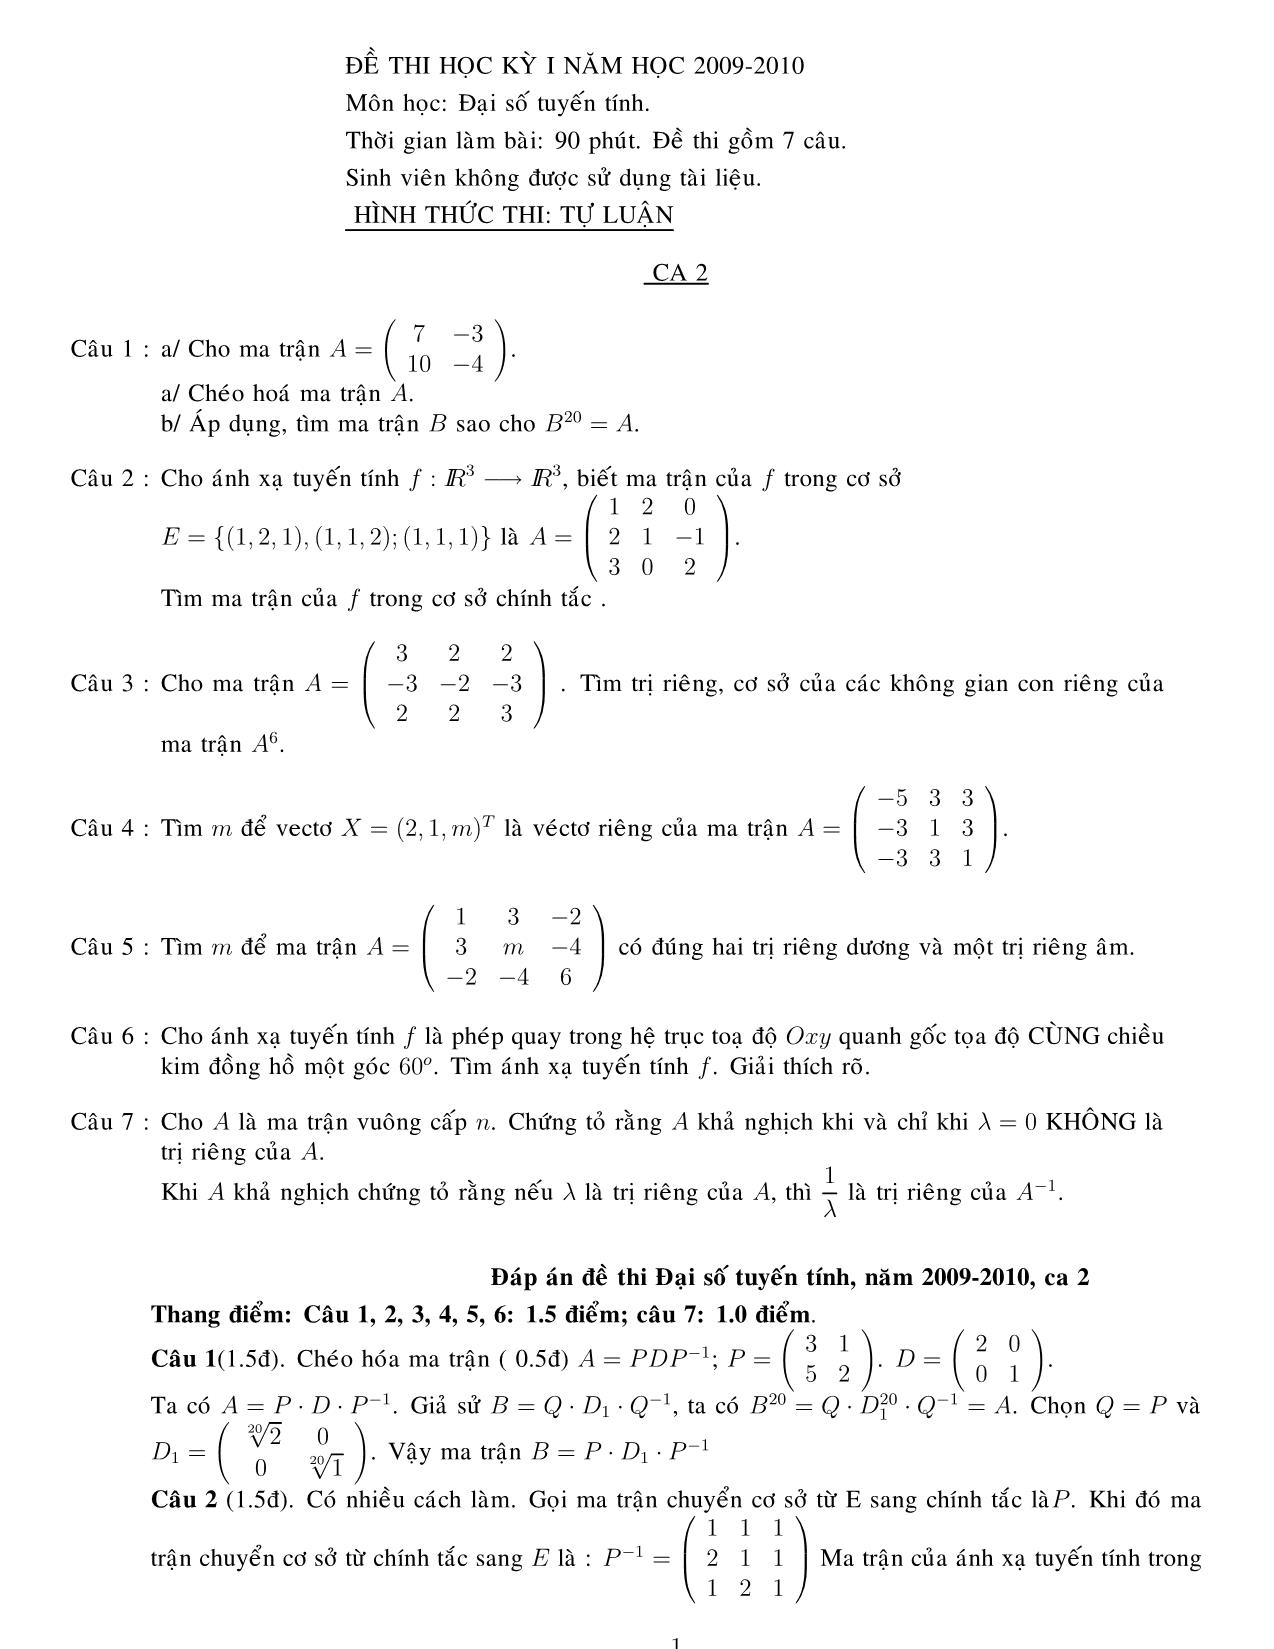 Đề thi học kỳ I môn Đại số tuyến tính - Ca 2 (Có đáp án) trang 1